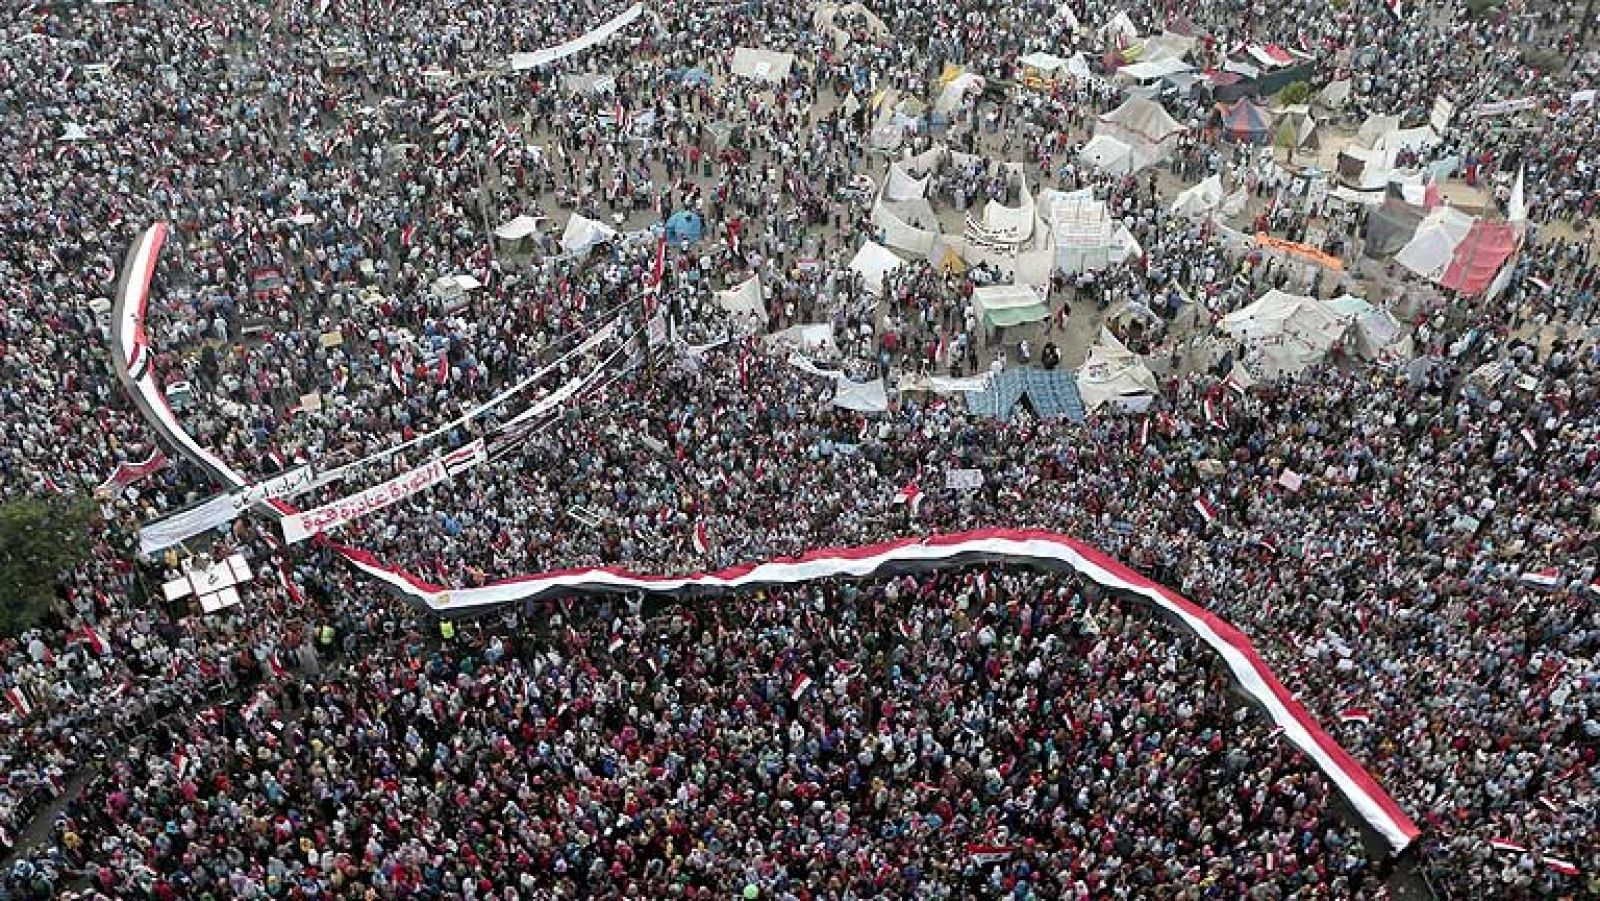 Los partidarios y detractores de Morsi en Egipto vuelven a las calles